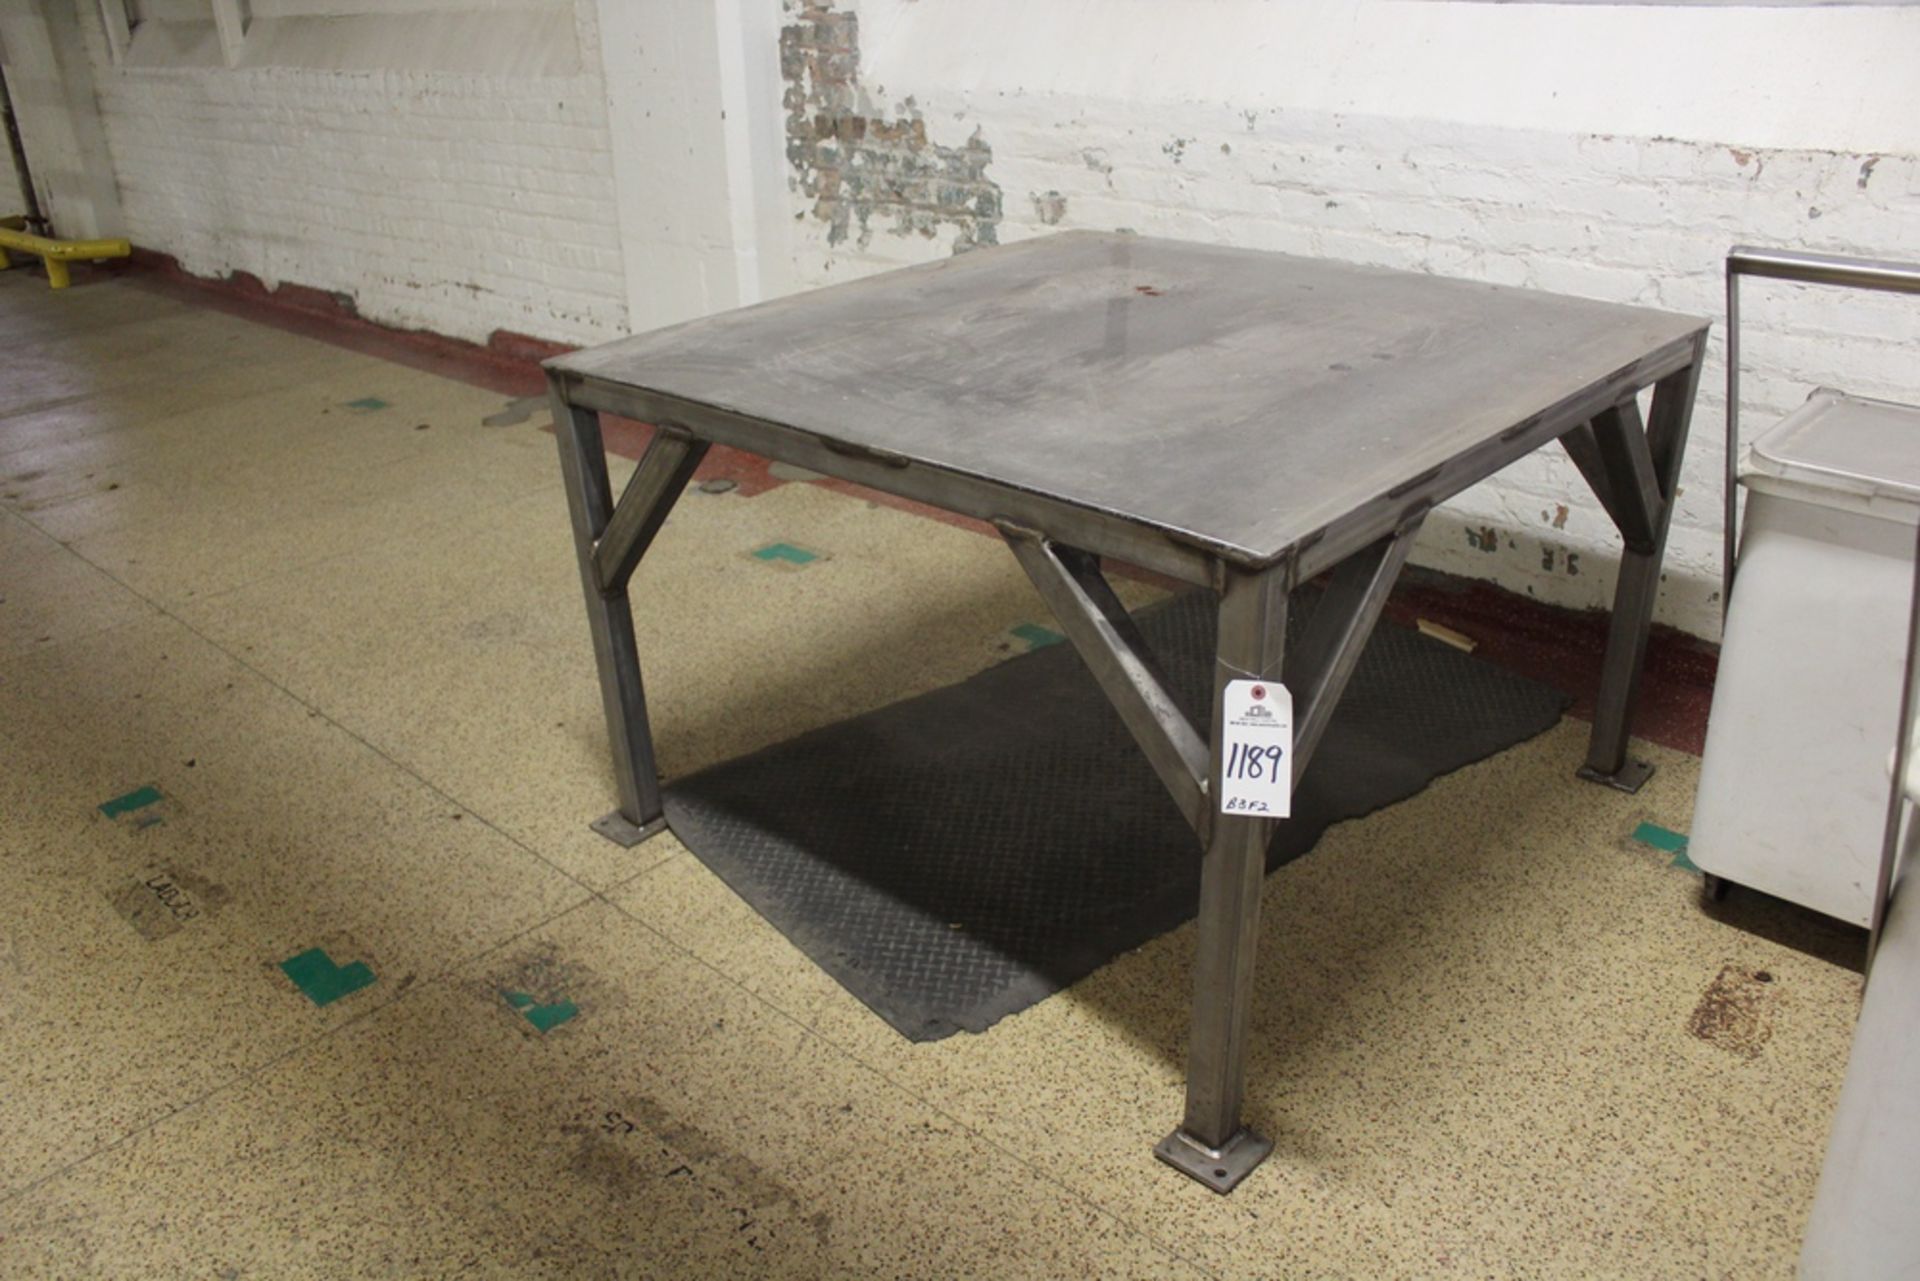 Stainless Steel Tote Platform | Rig Fee: $50